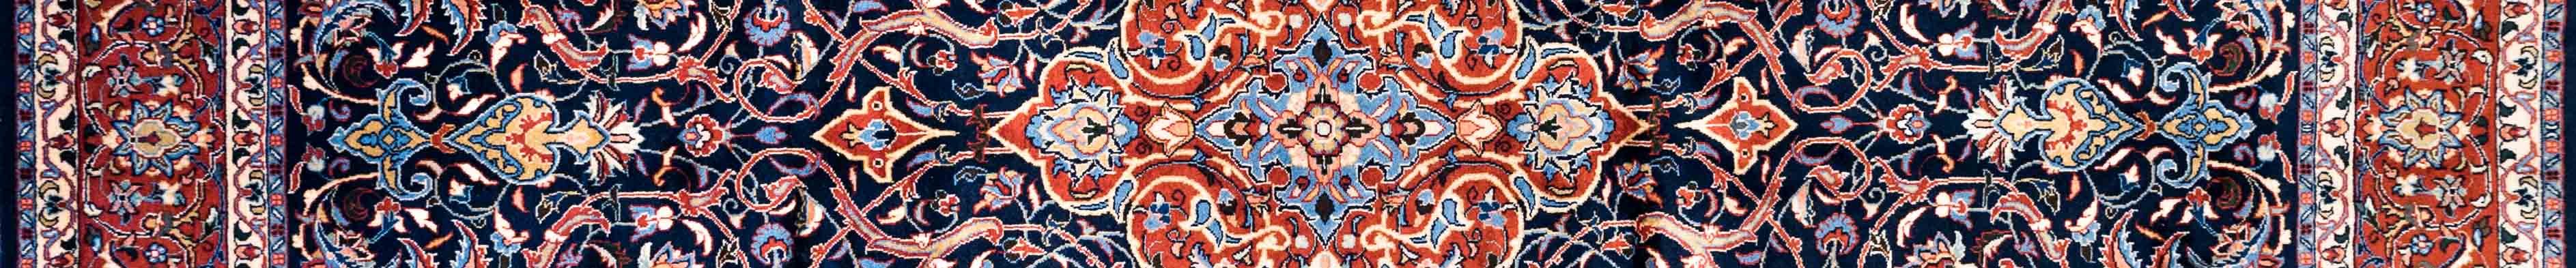 Sarouq Persian Carpet Rug N1Carpet Canada Montreal Tapis Persan 2900